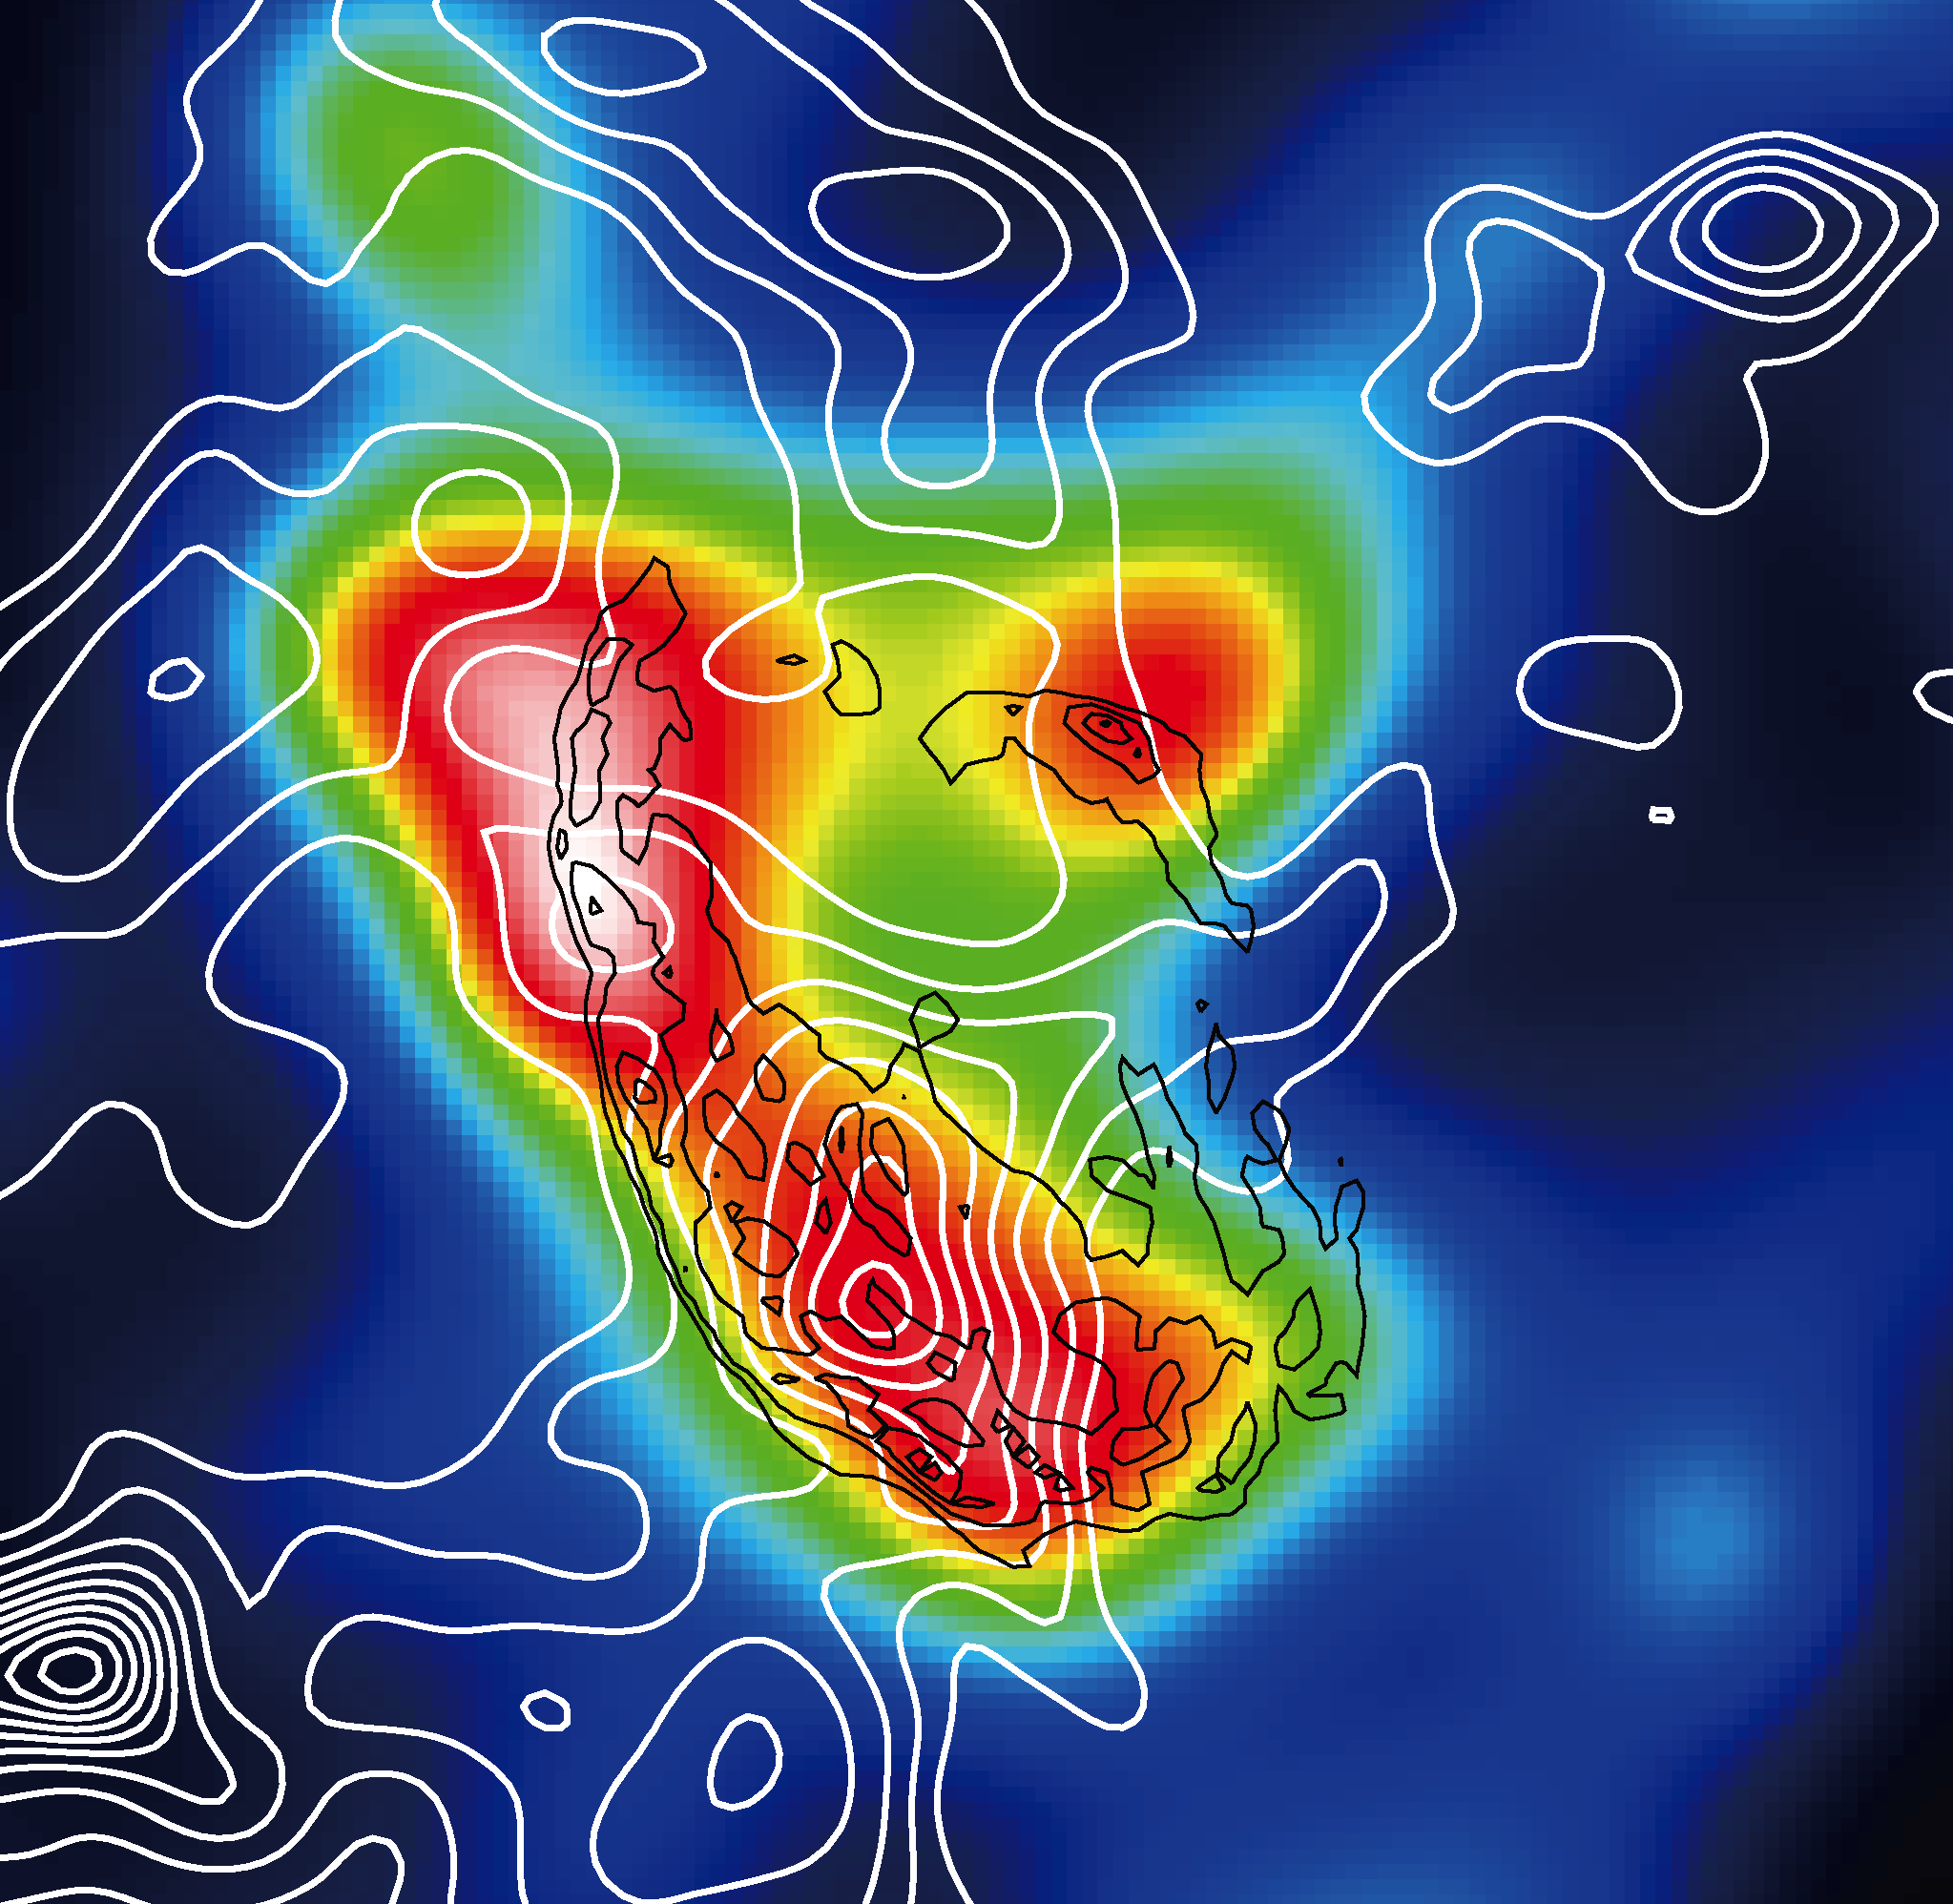 超新星残骸W44のガンマ線像